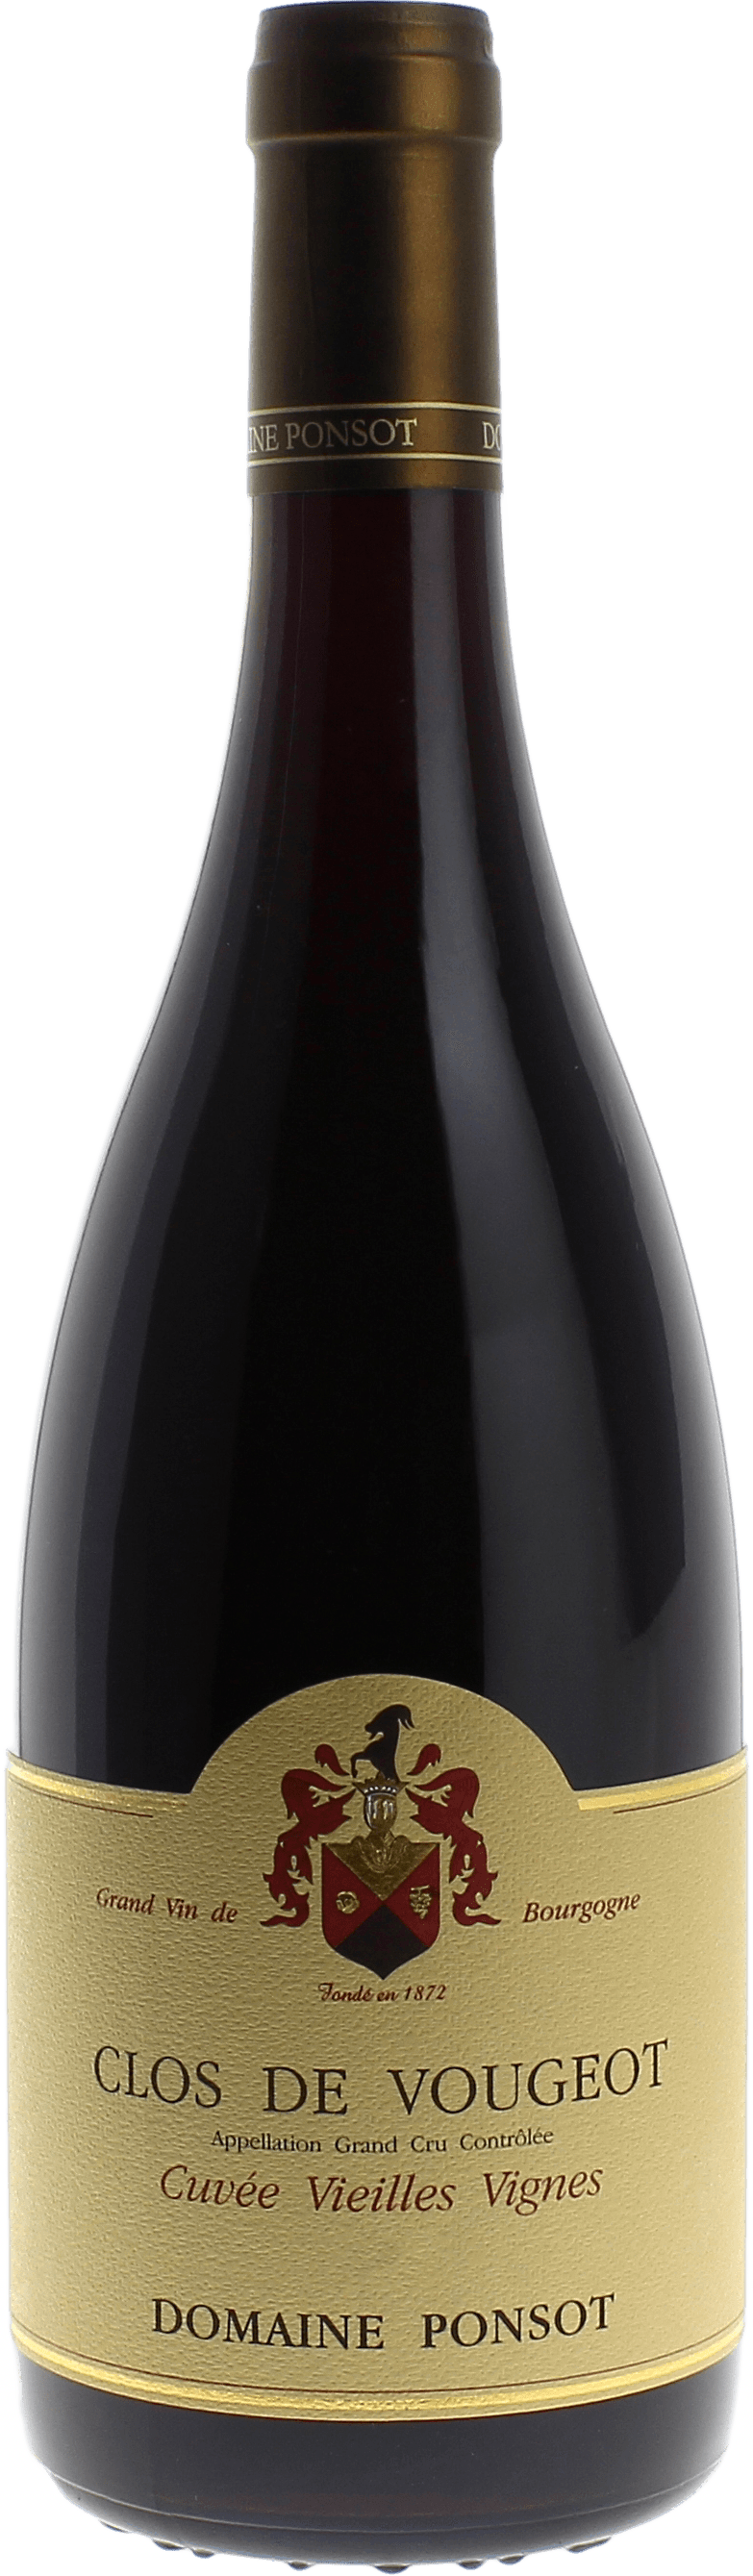 Clos de vougeot grand cru cuve vieilles vignes 2016 Domaine PONSOT, Bourgogne rouge